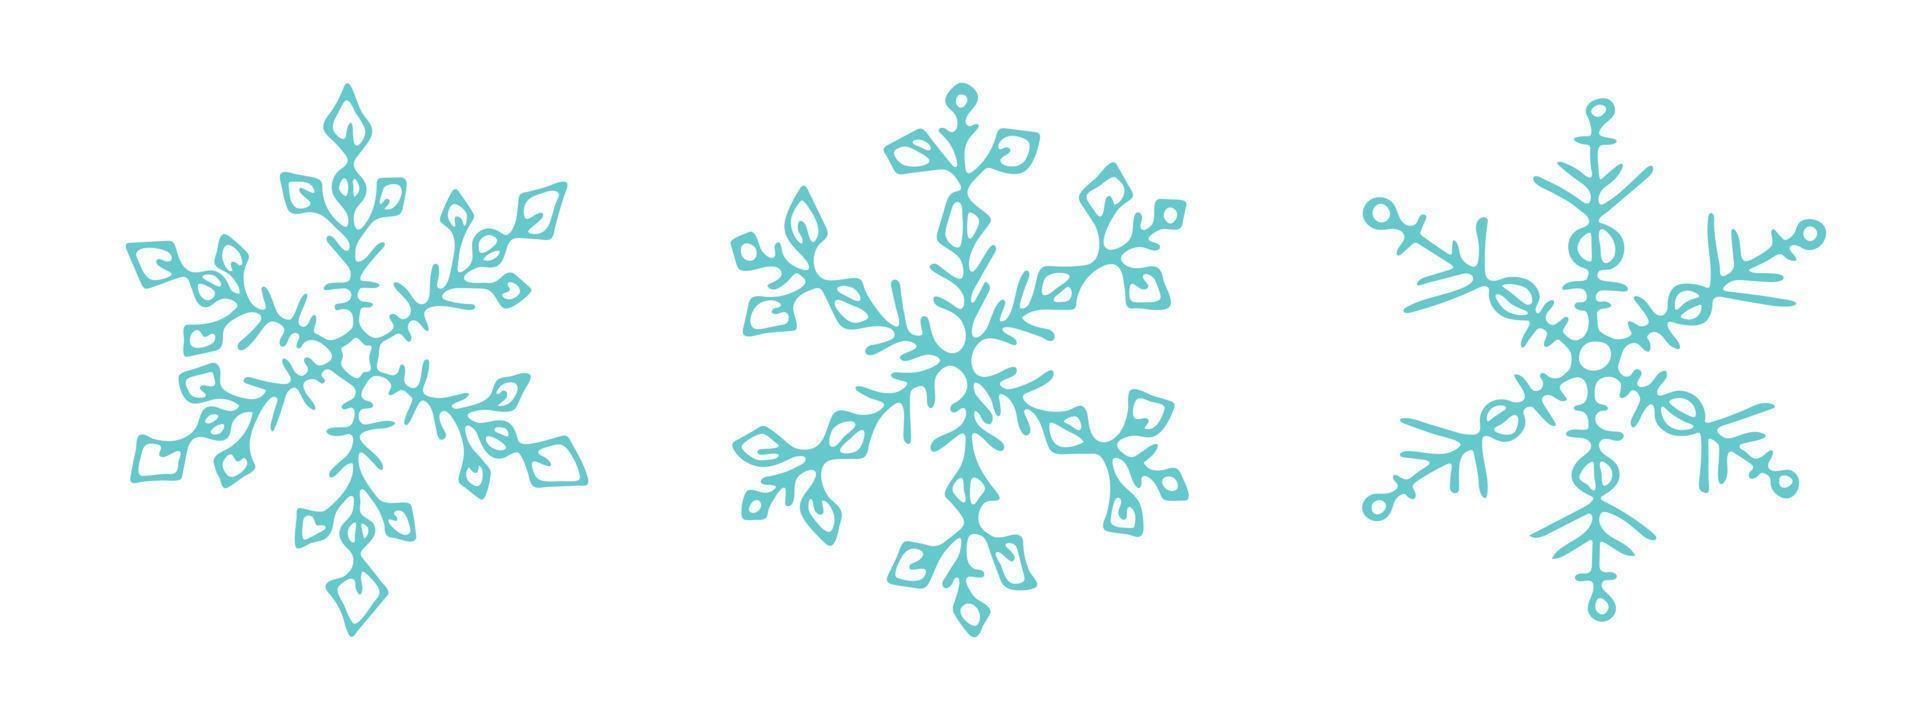 conjunto de lindos copos de nieve dibujados a mano. ilustración de garabatos vectoriales. navidad y año nuevo diseño moderno. para impresión, web, diseño, decoración, logotipo. vector